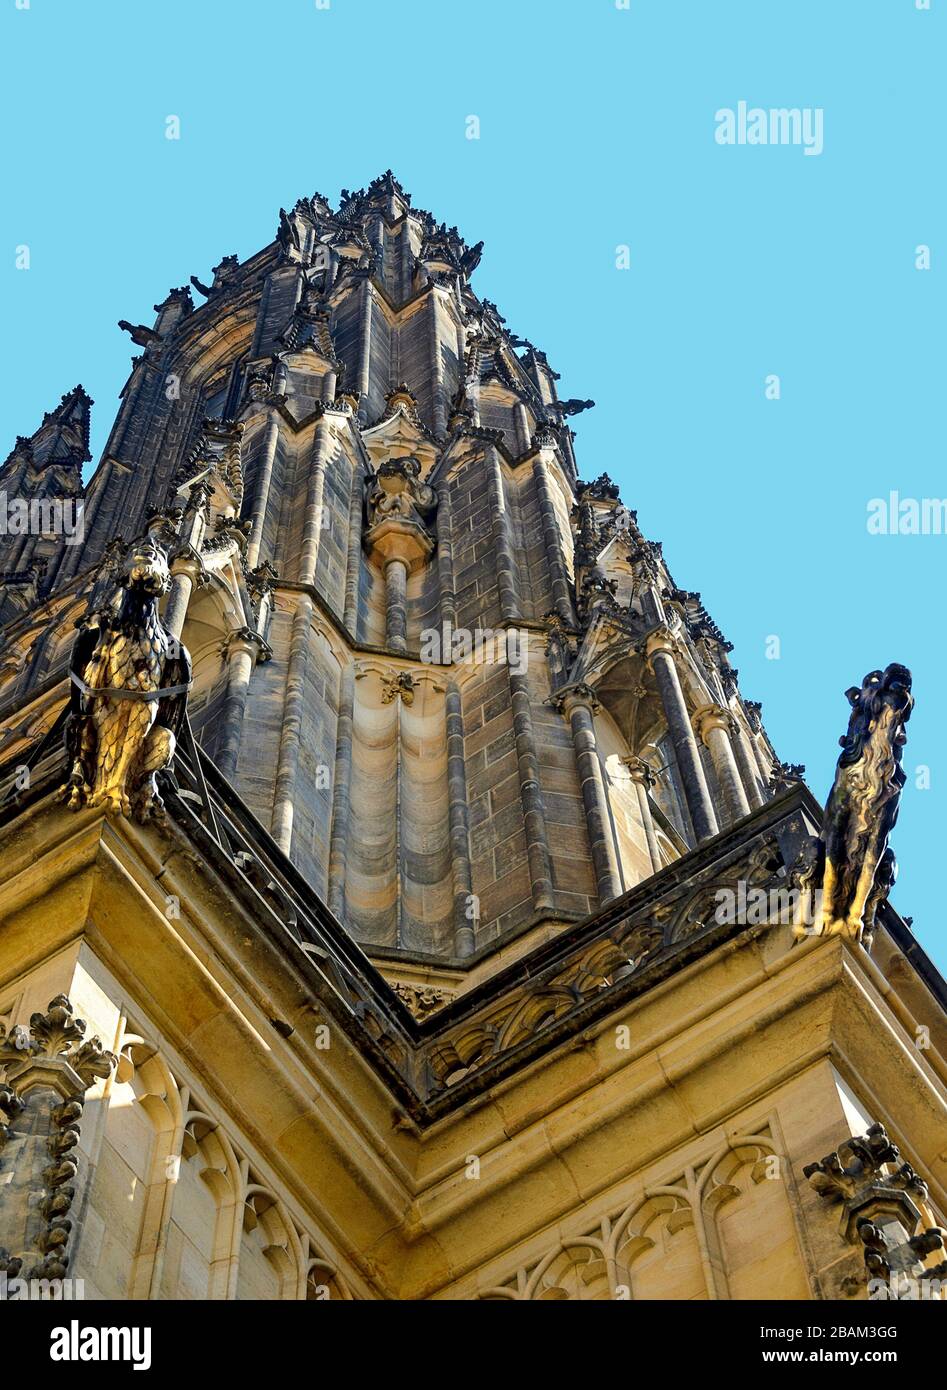 Turm der Metropolitankathedrale der Heiligen Vitus, Wenceslaus und Adalbert auf dem Burgberg Hradschin bei Prag, Tschechien Stockfoto